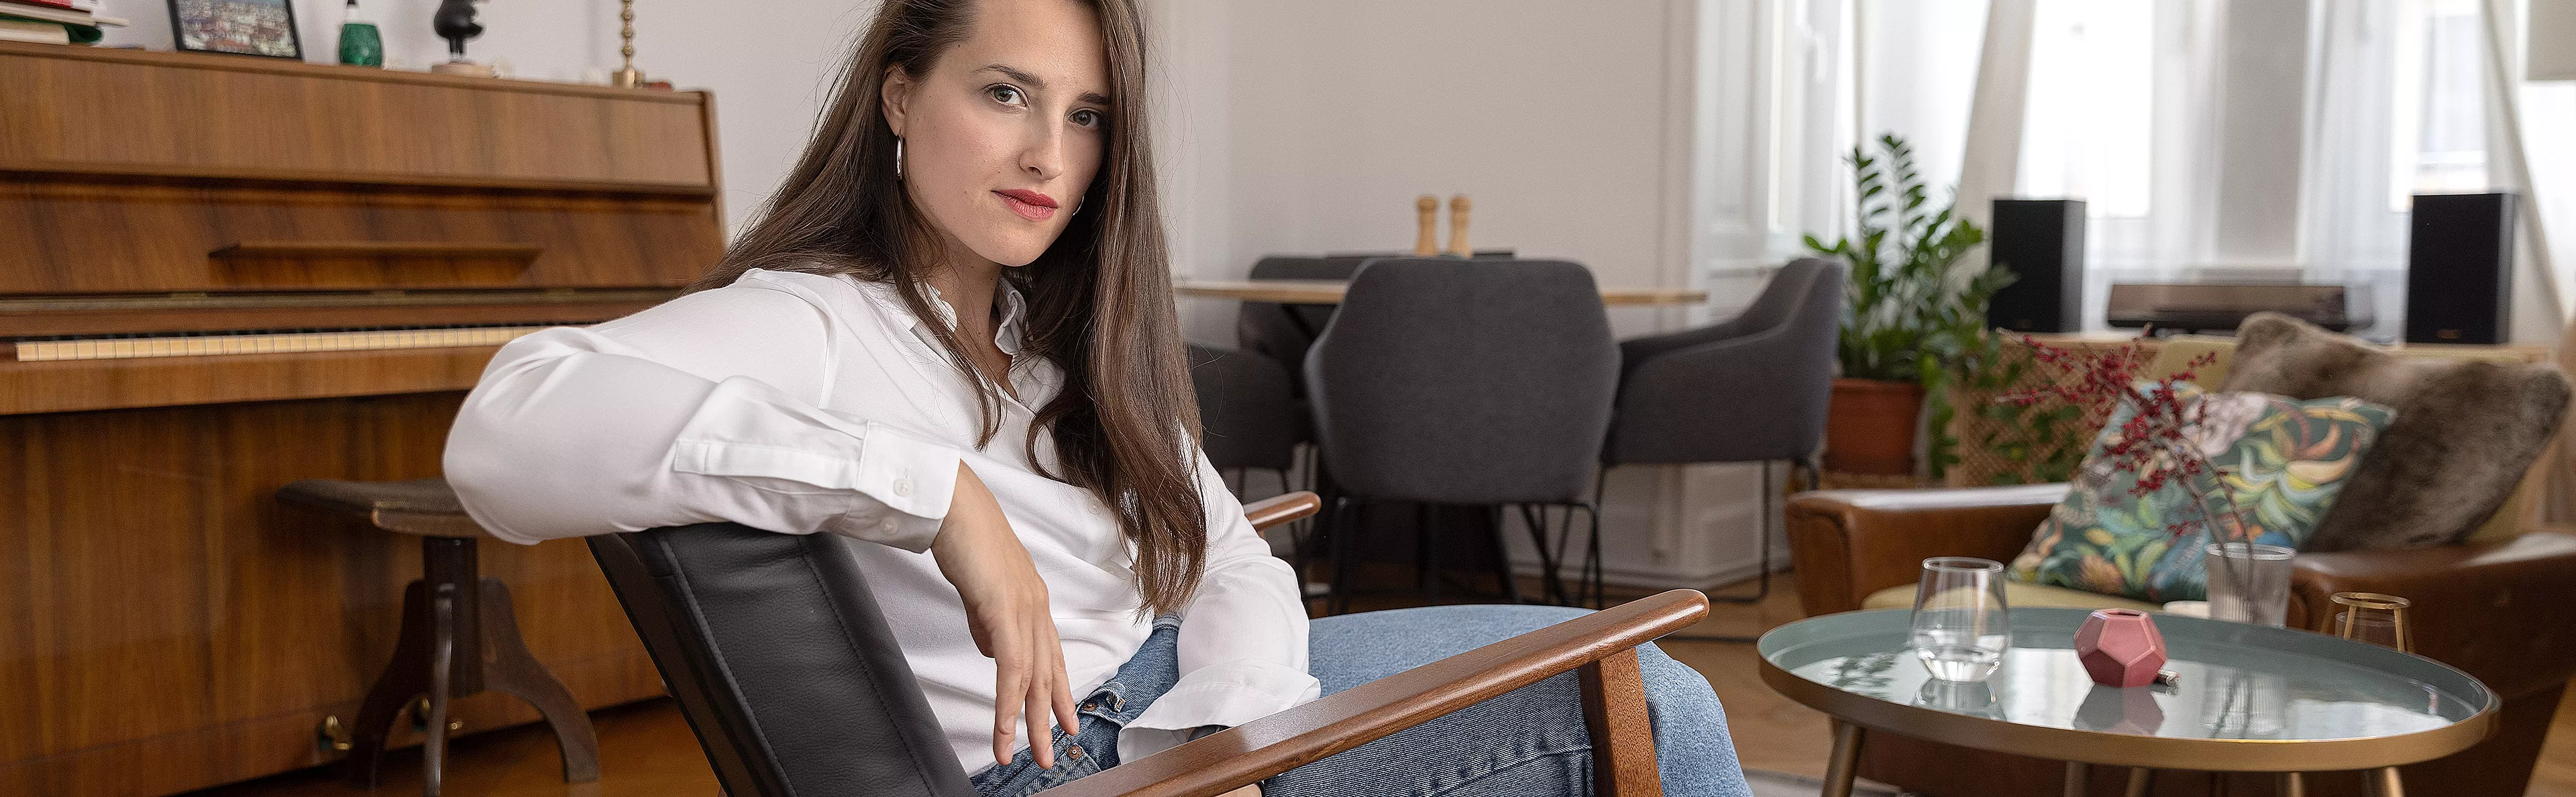 Sara Glojnarić sitzt auf einem Sessel